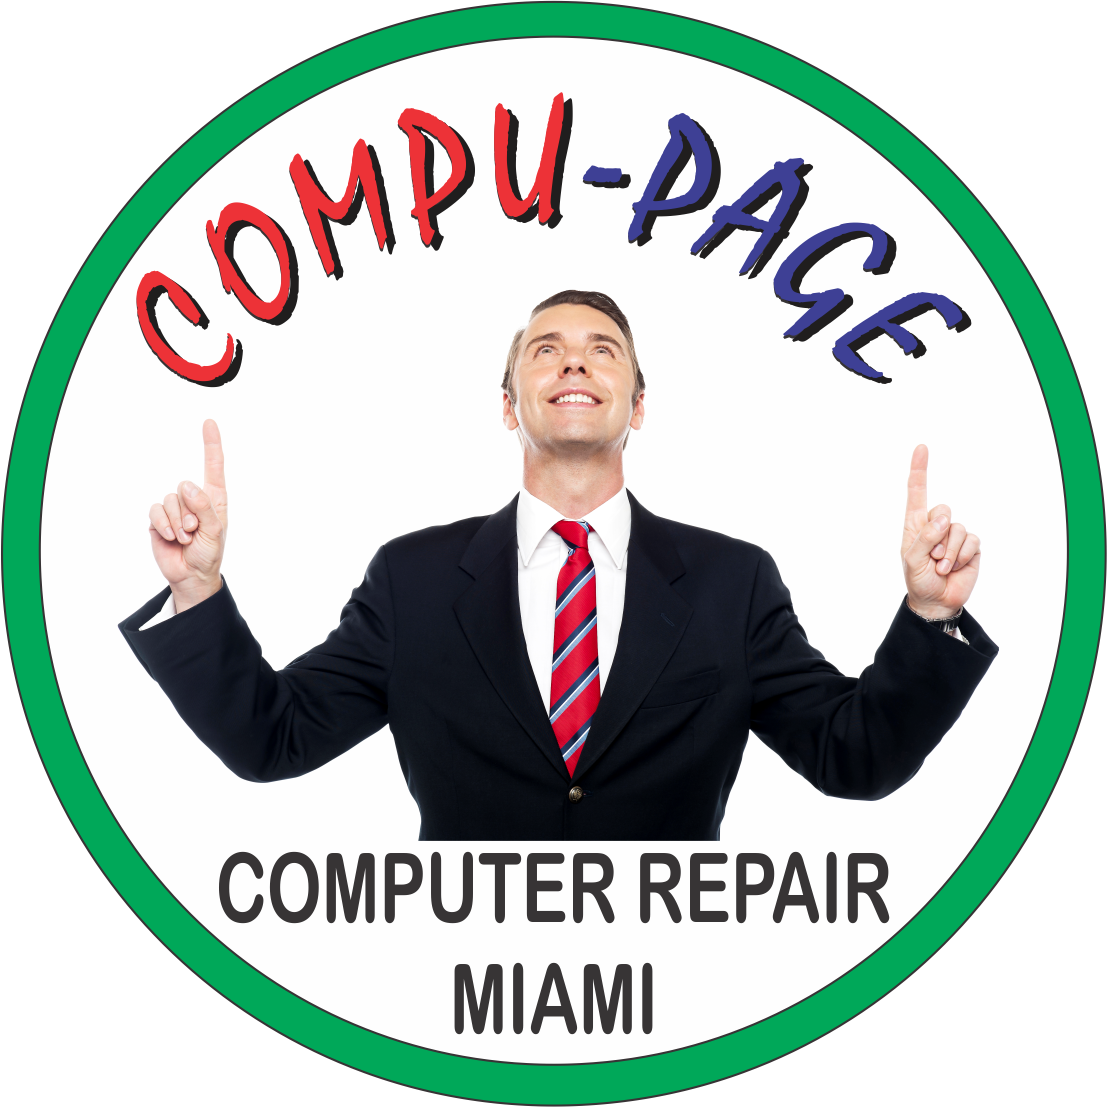 COMPU-PAGE LLC Photo